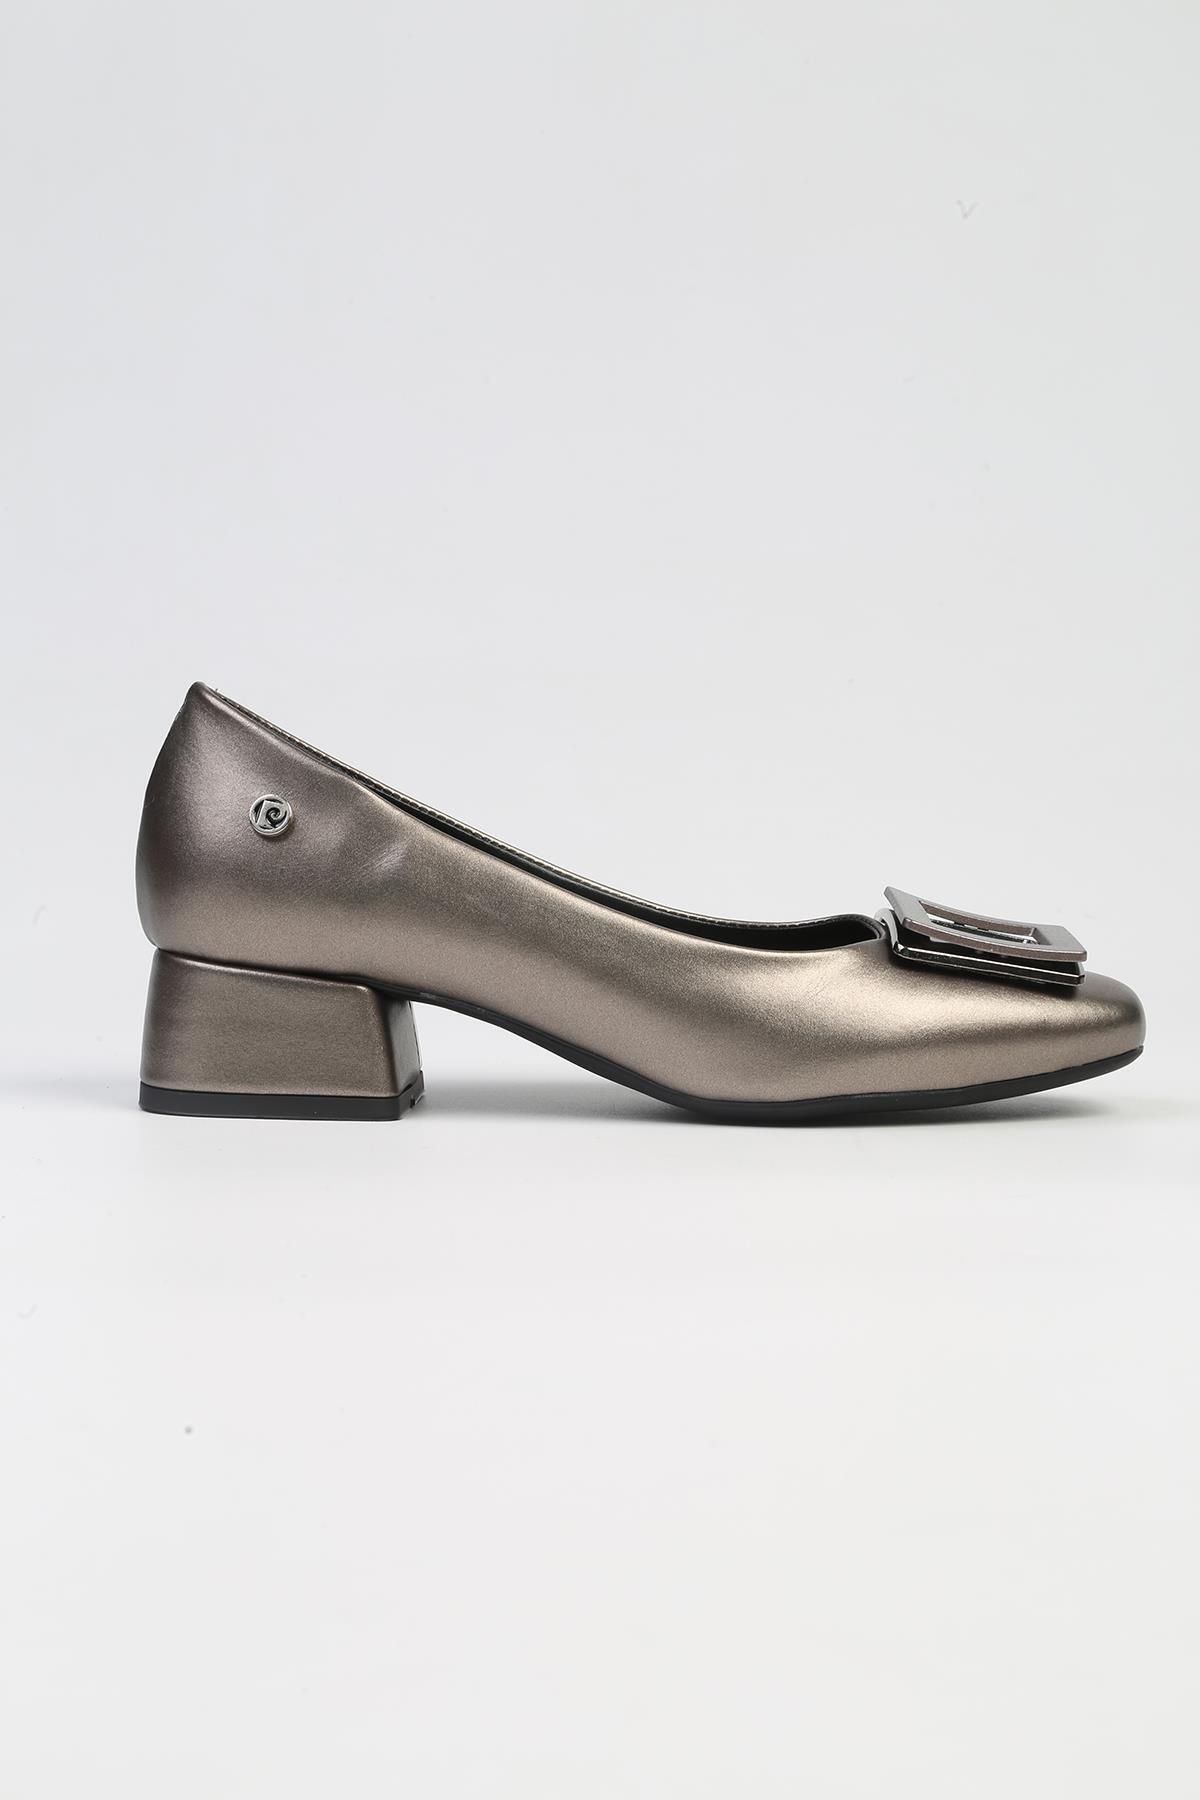 Pierre Cardin ® | PC-53109- 3592 Platin Cilt-Kadın Kısa Topuklu Ayakkabı